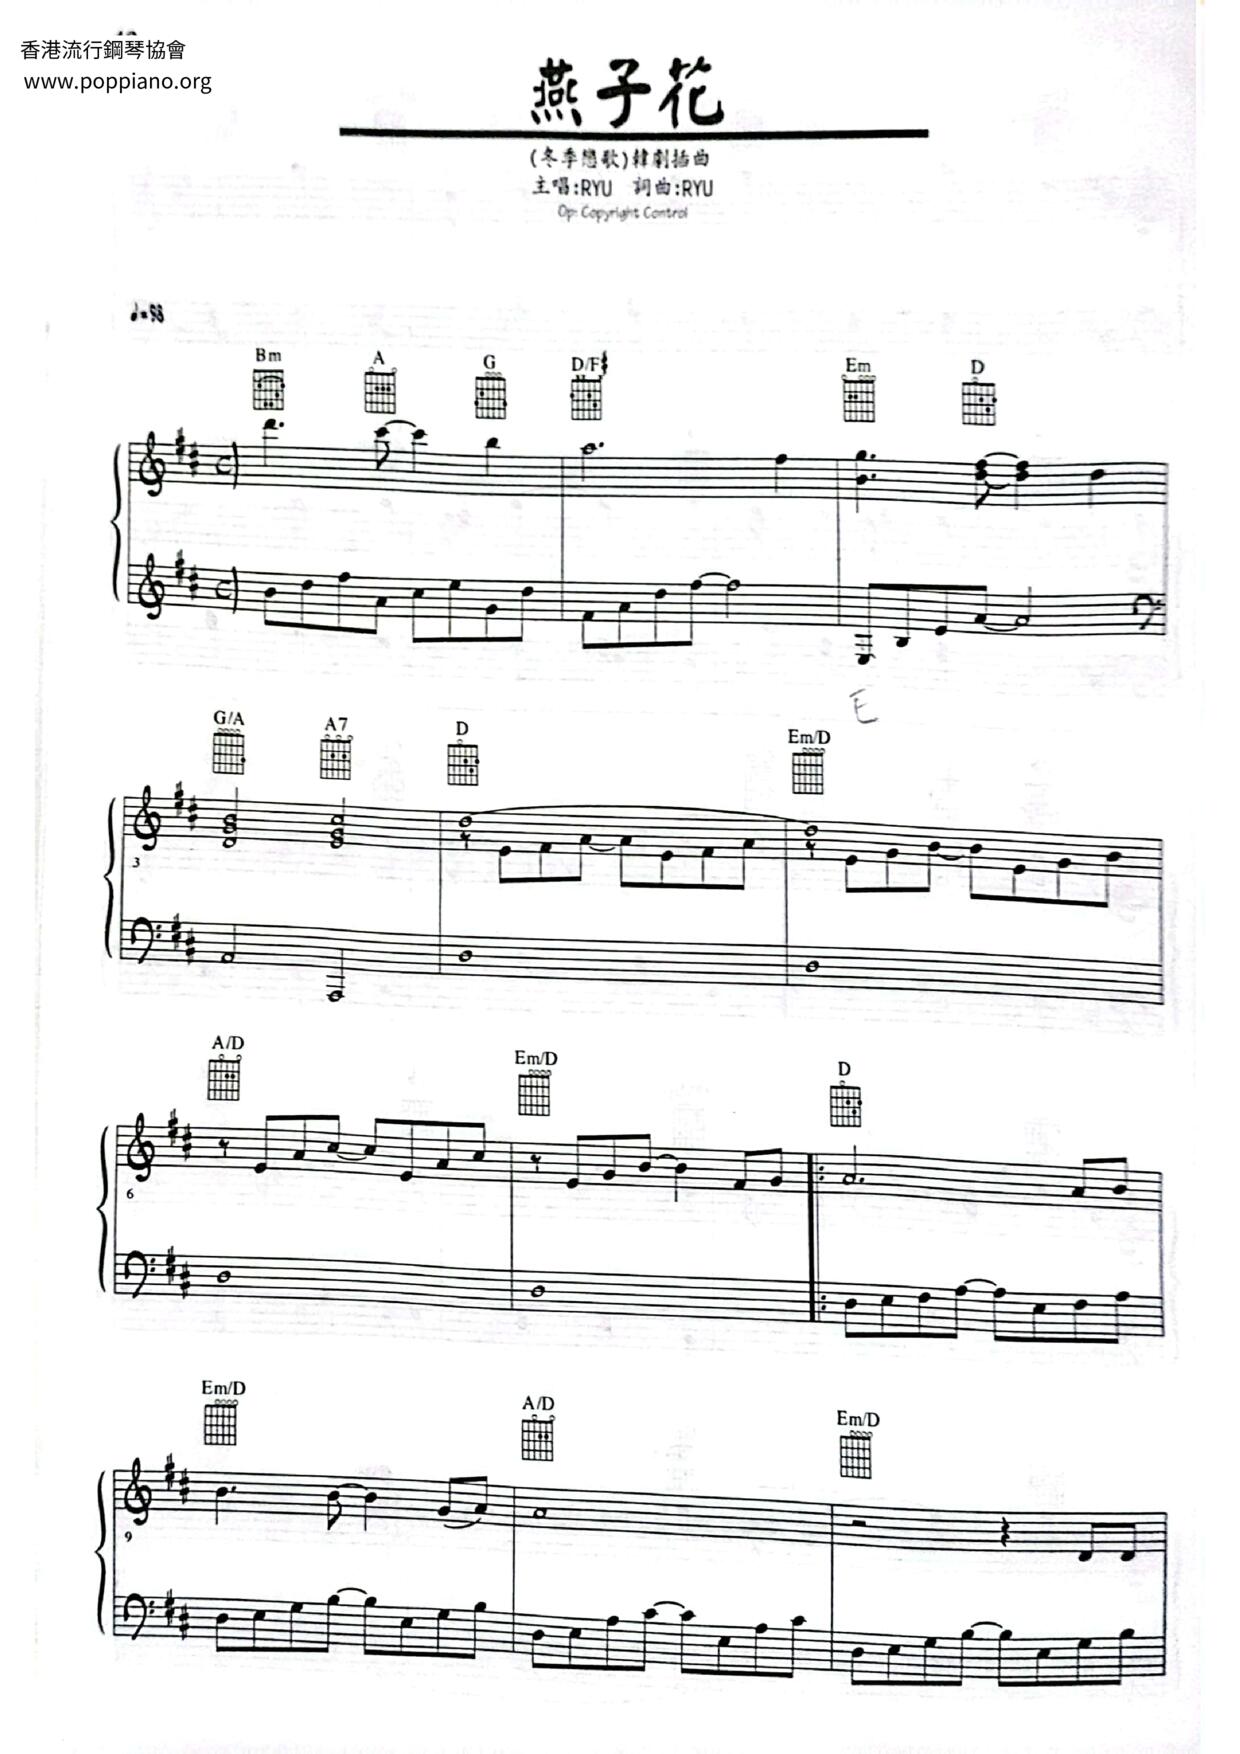 Winter Sonata - Swallow Flower Score